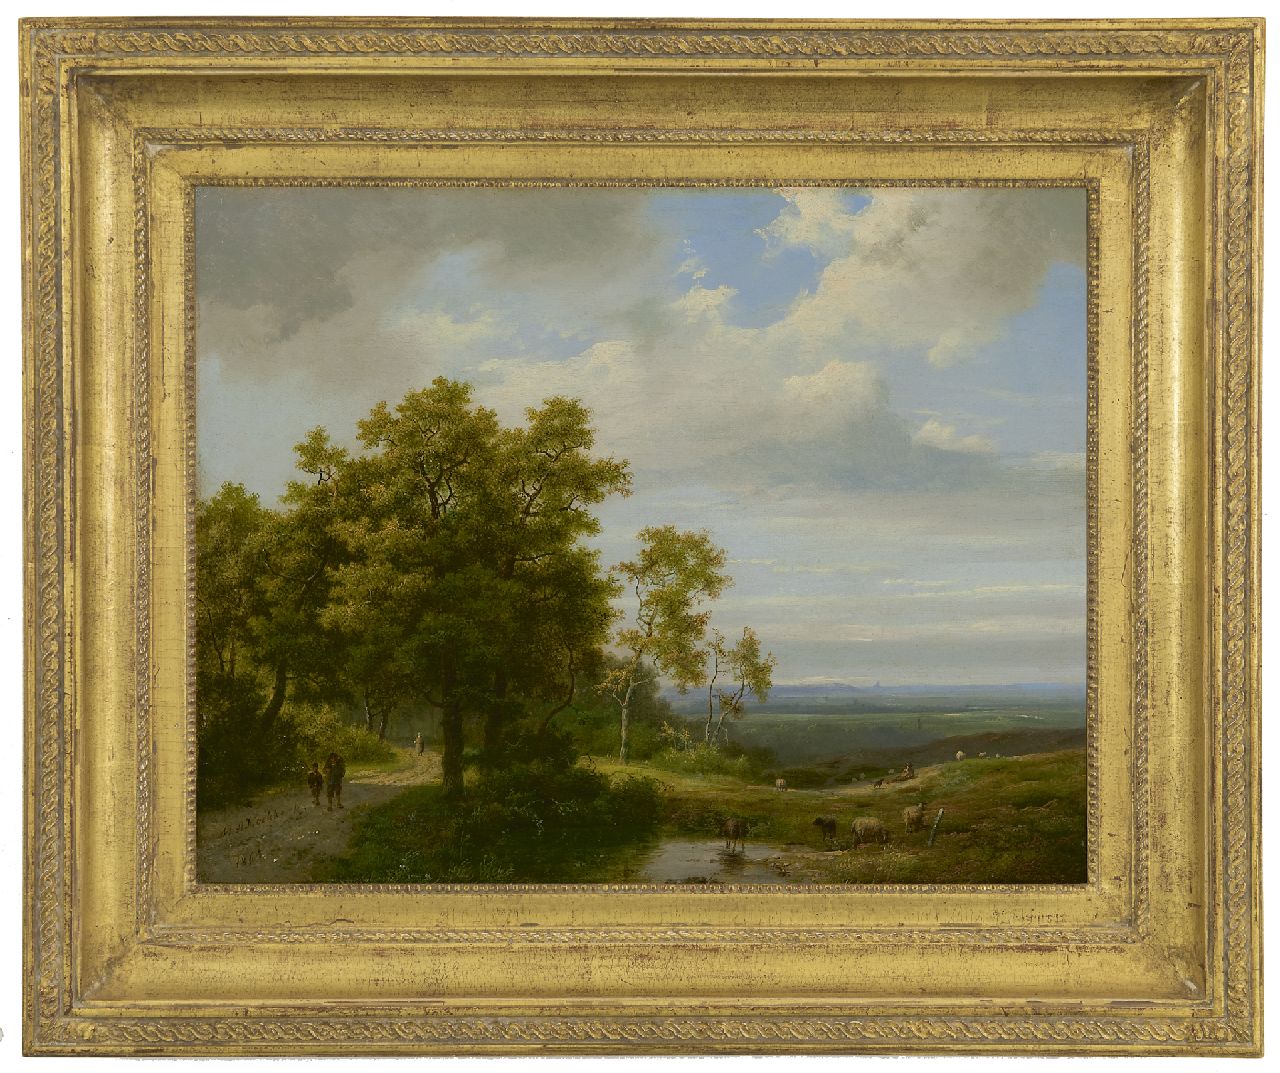 Koekkoek I M.A.  | Marinus Adrianus Koekkoek I | Schilderijen te koop aangeboden | Boomrijk landschap, olieverf op doek 34,8 x 44,4 cm, gesigneerd linksonder en gedateerd 1864